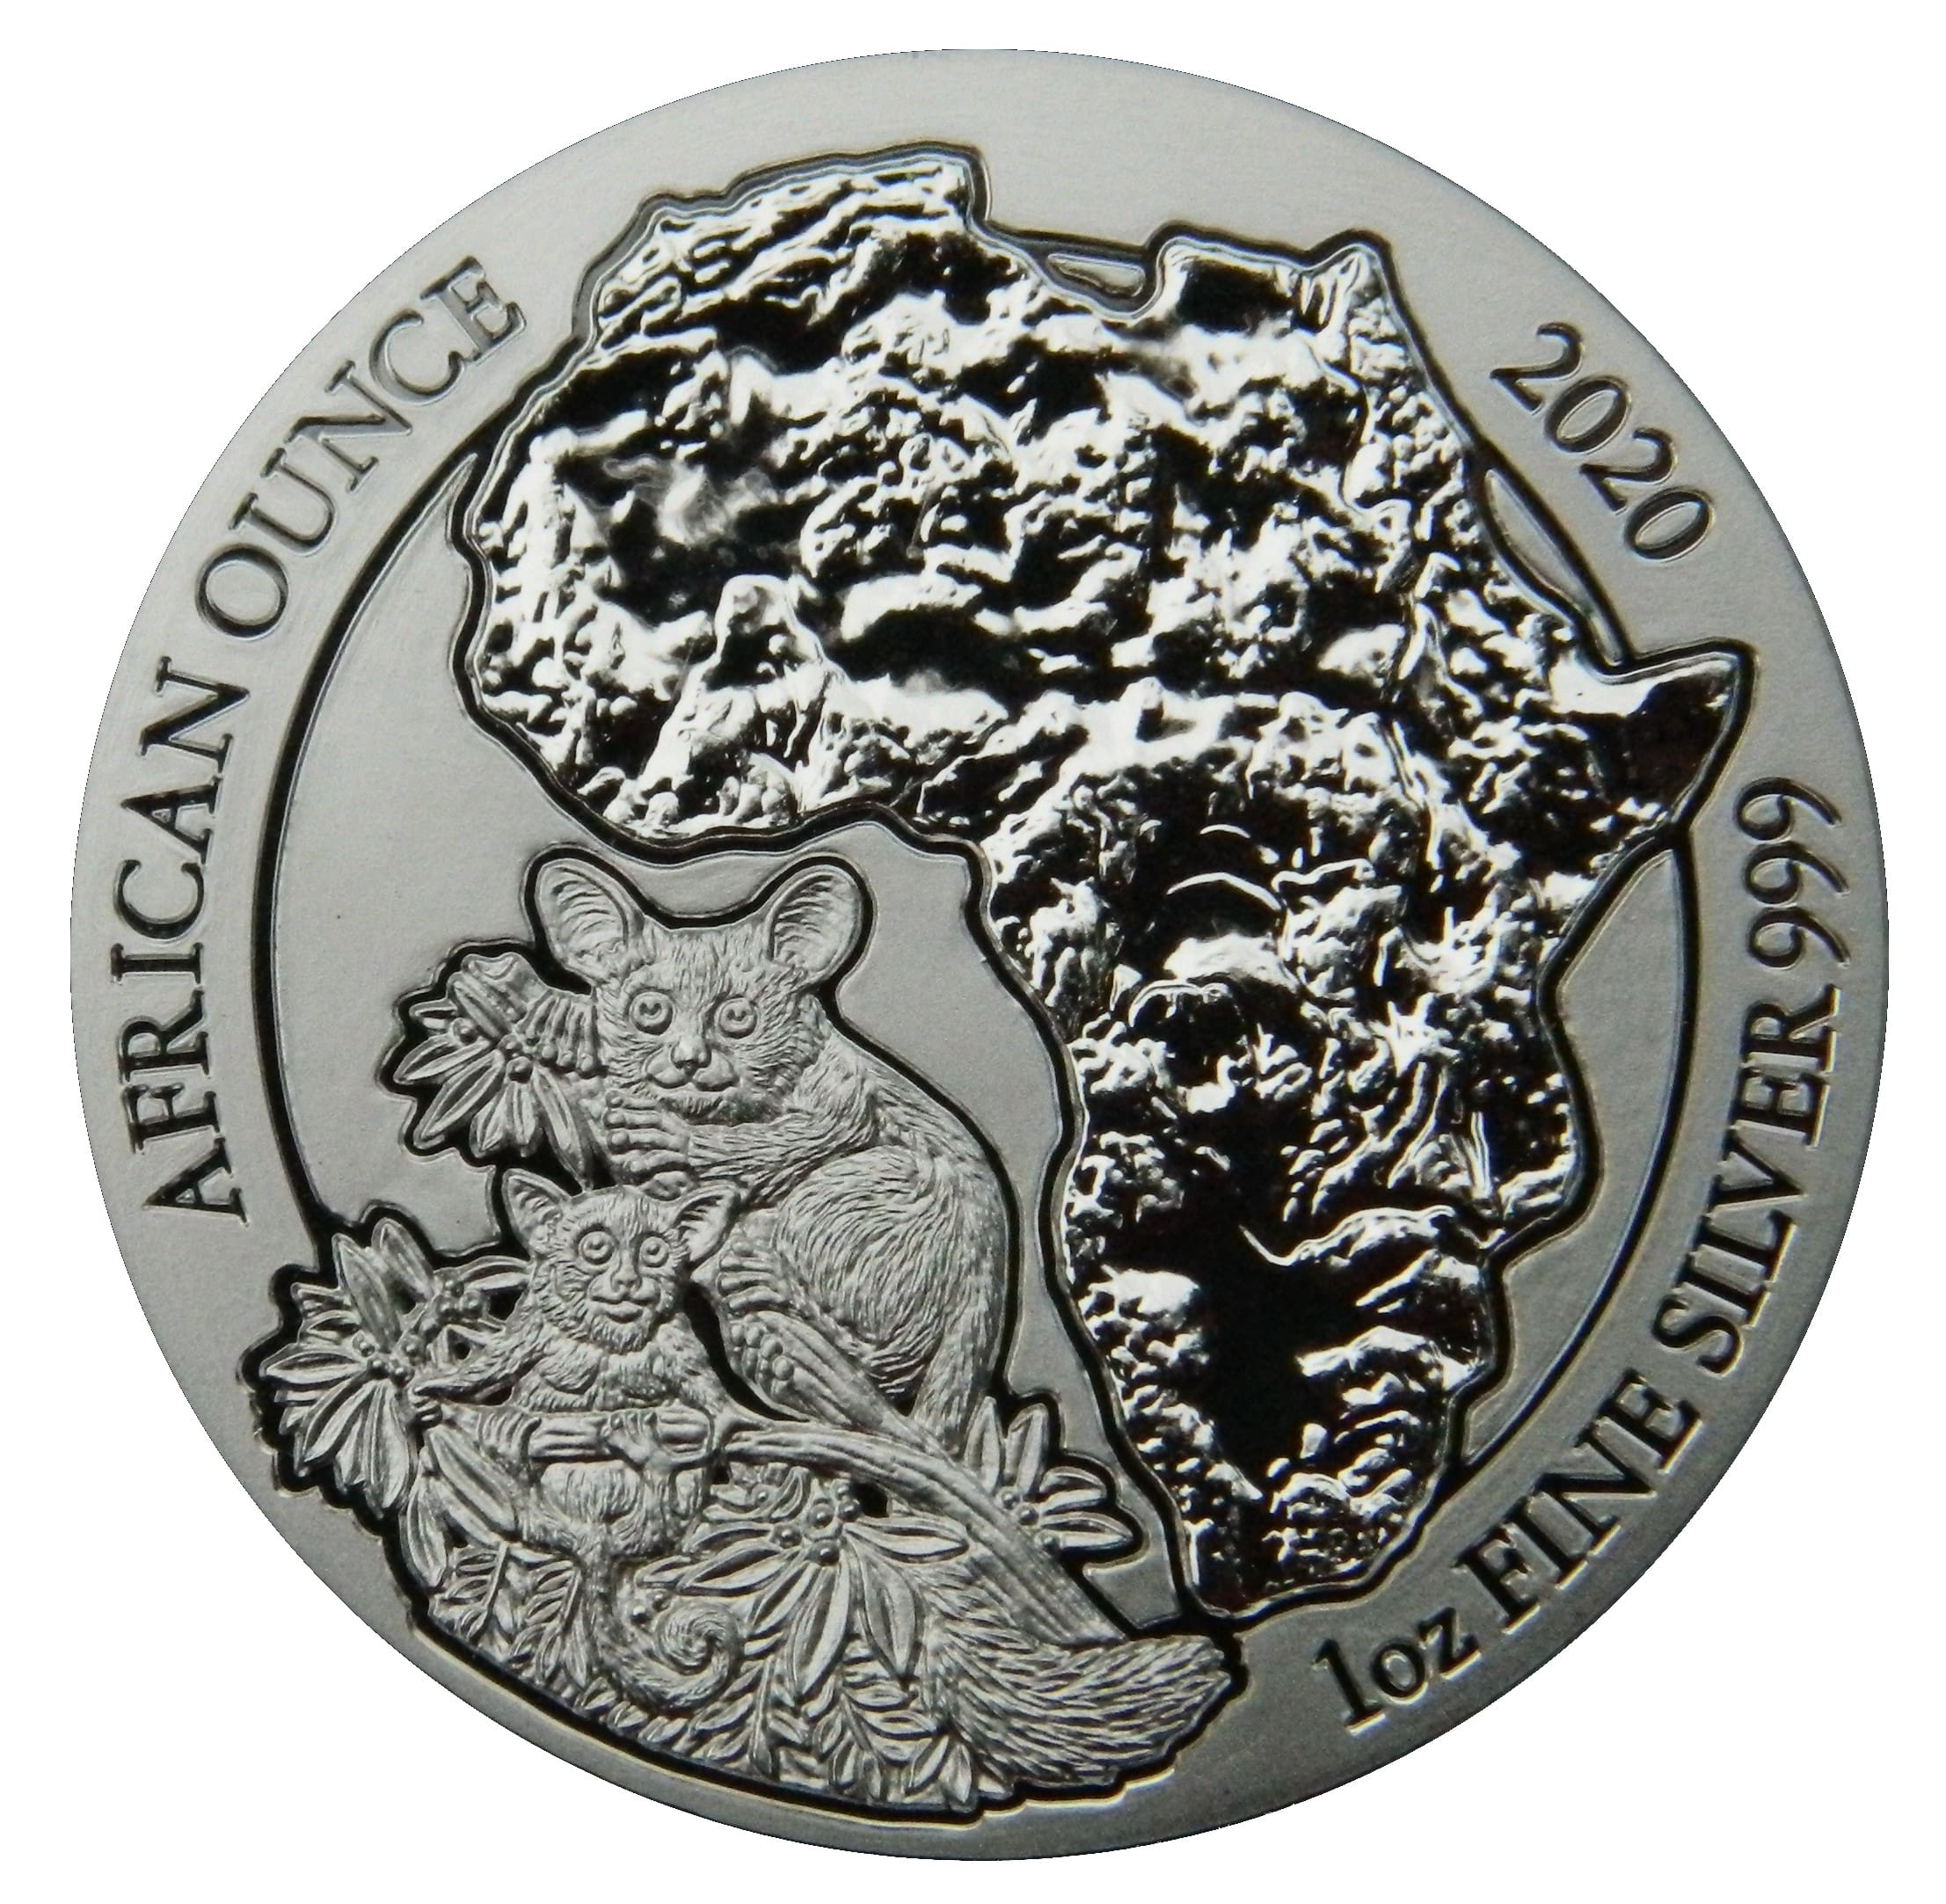 2020 Galago African Ounce 1oz Silver BU Coin Reverse View